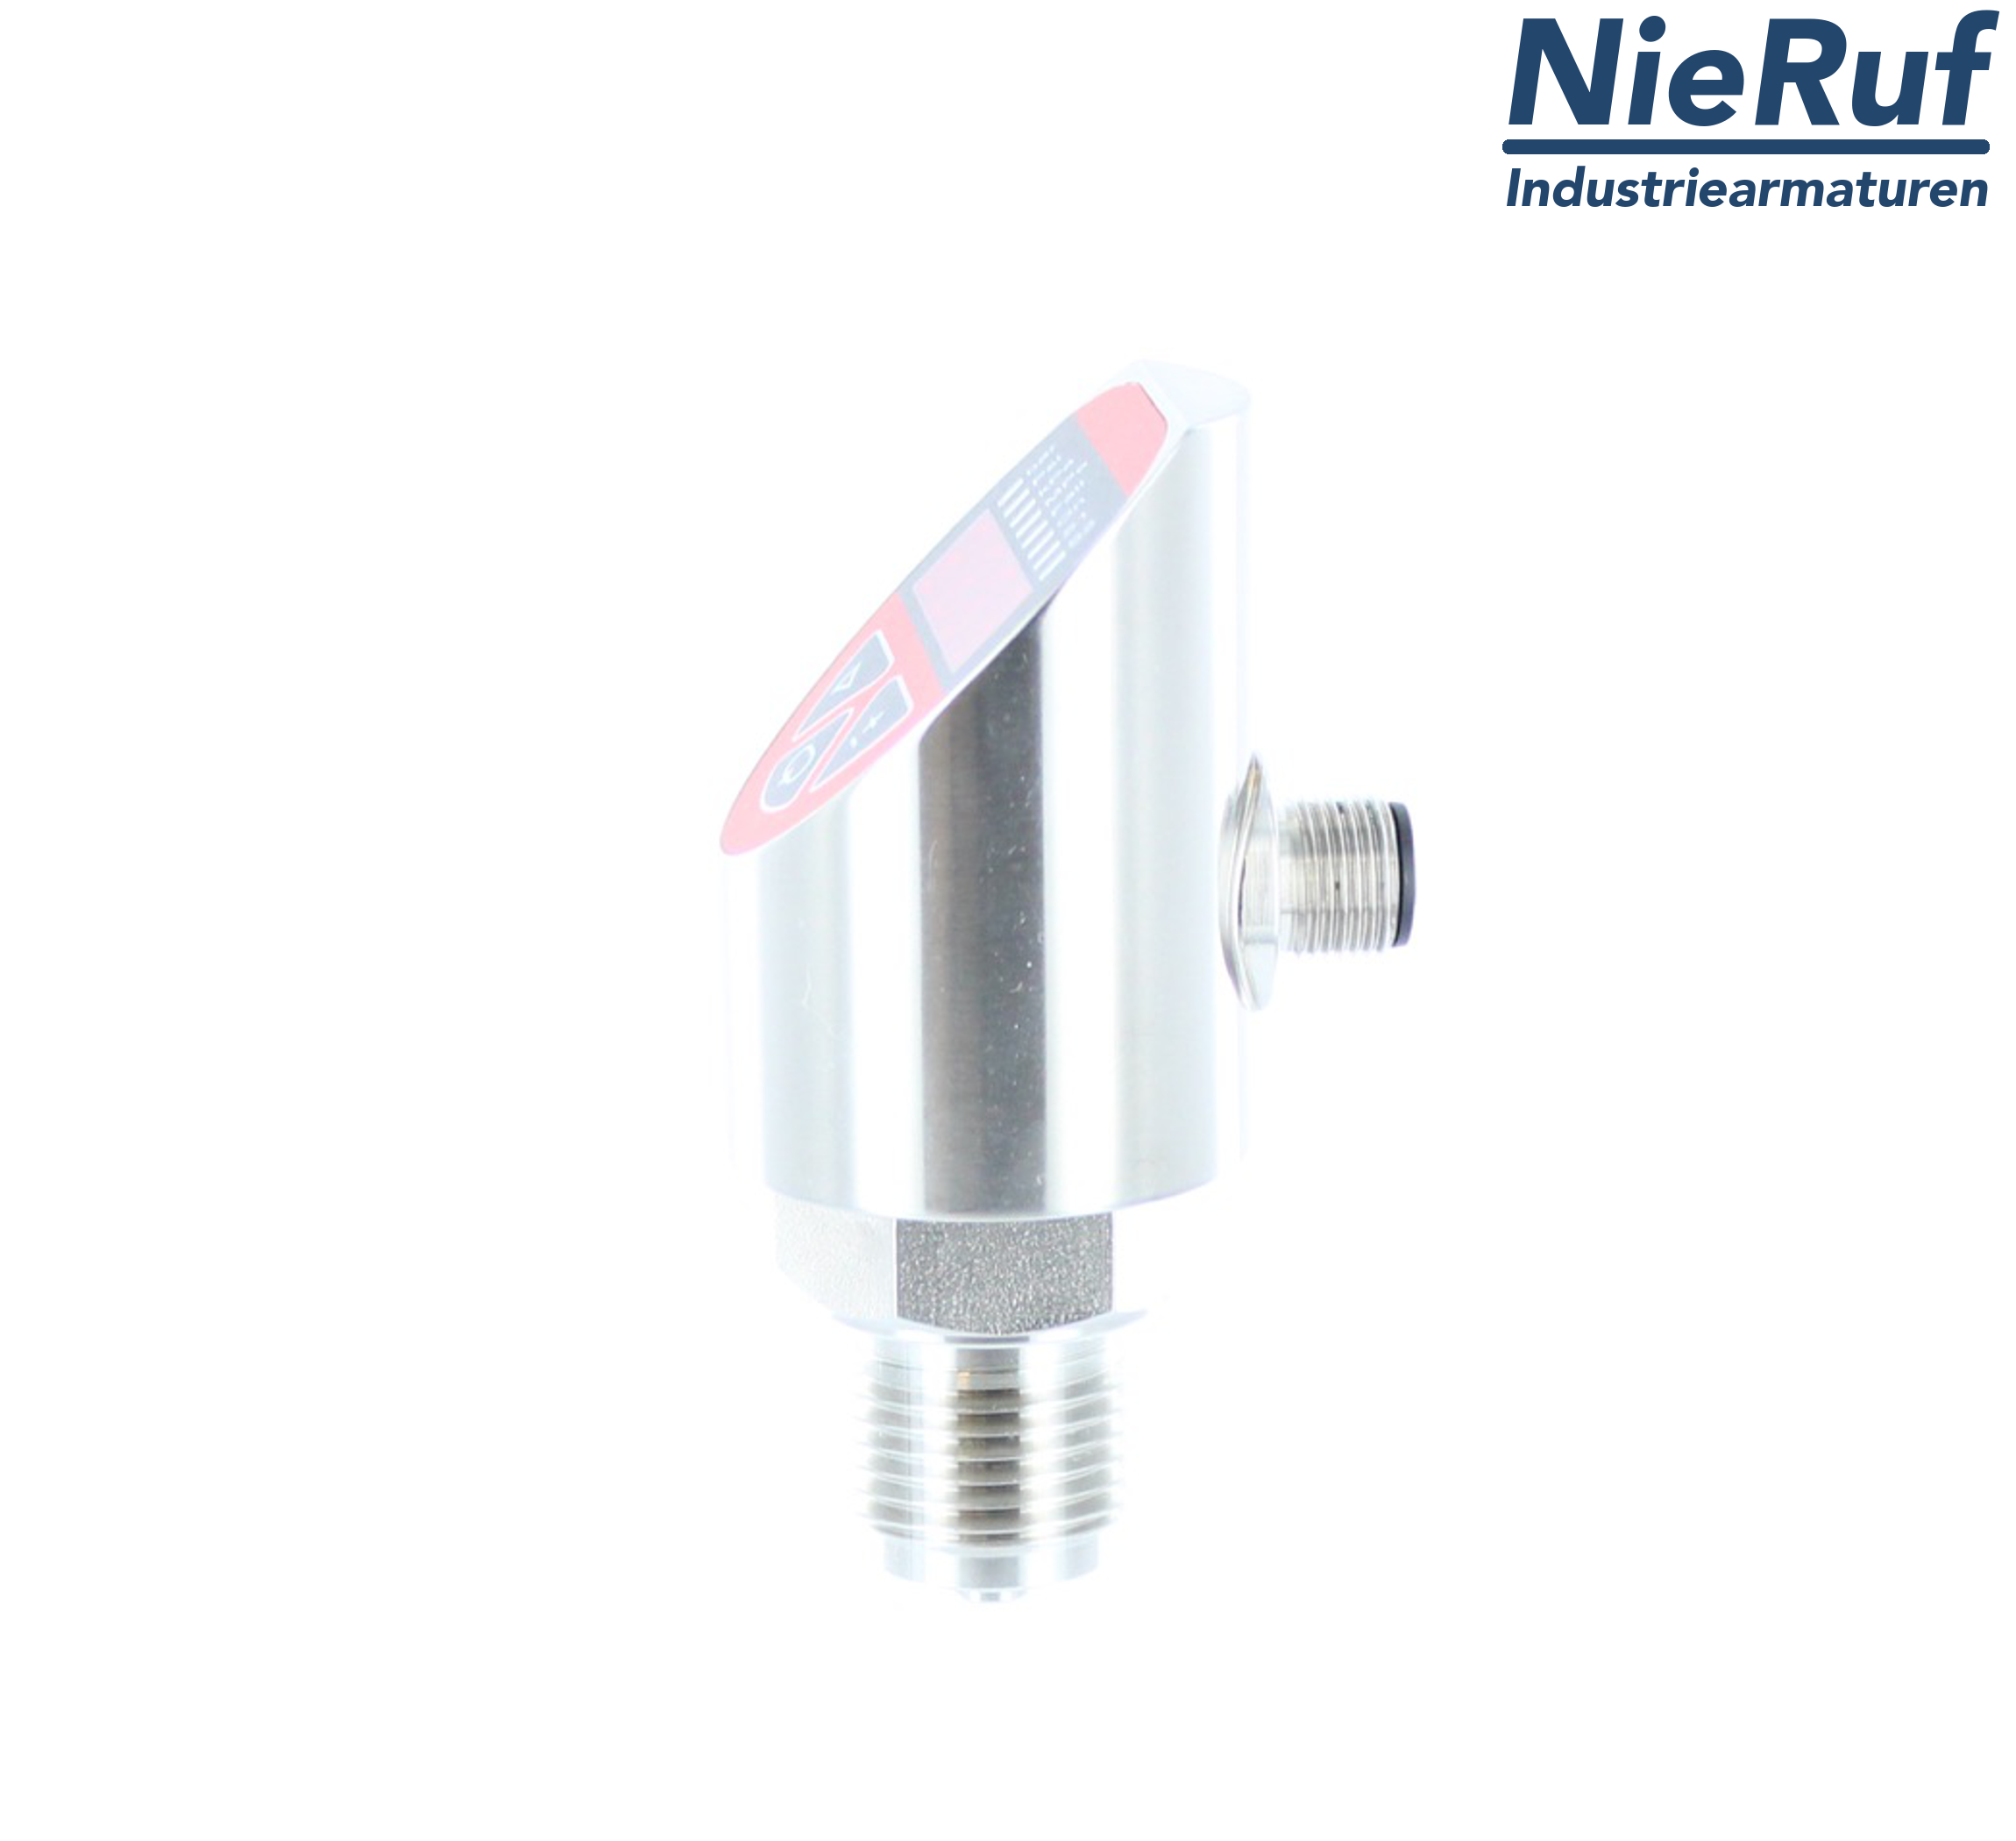 digital pressure sensor G 1/4" B 4-wire: 1xPNP, 1x4 - 20mA, Desina FPM 0,0 - 100,0 bar